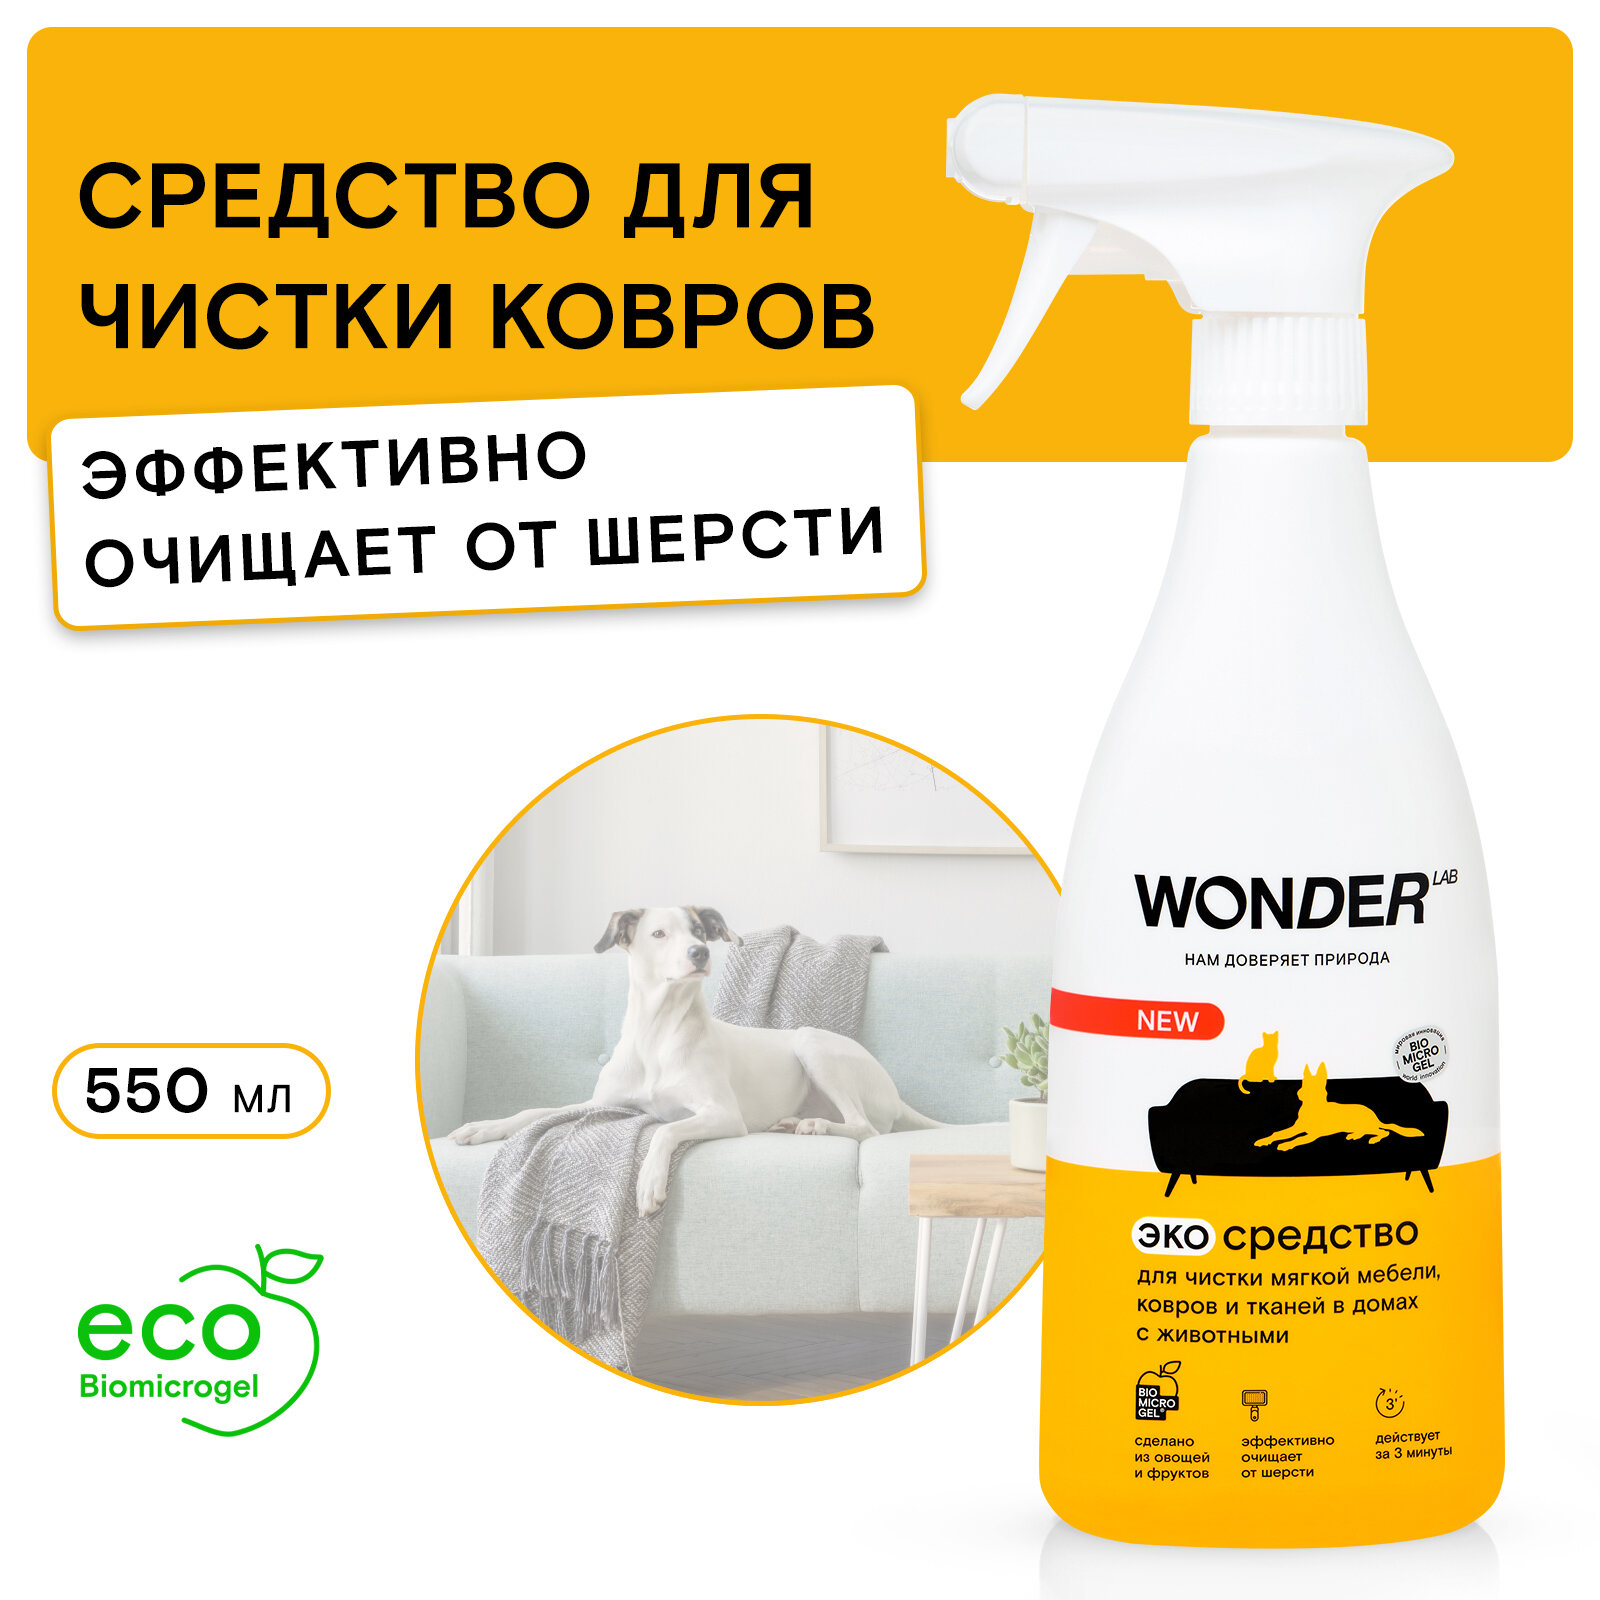 WONDER LAB Экосредство для чистки мягкой мебели ковров и тканей в домах с животными 055л